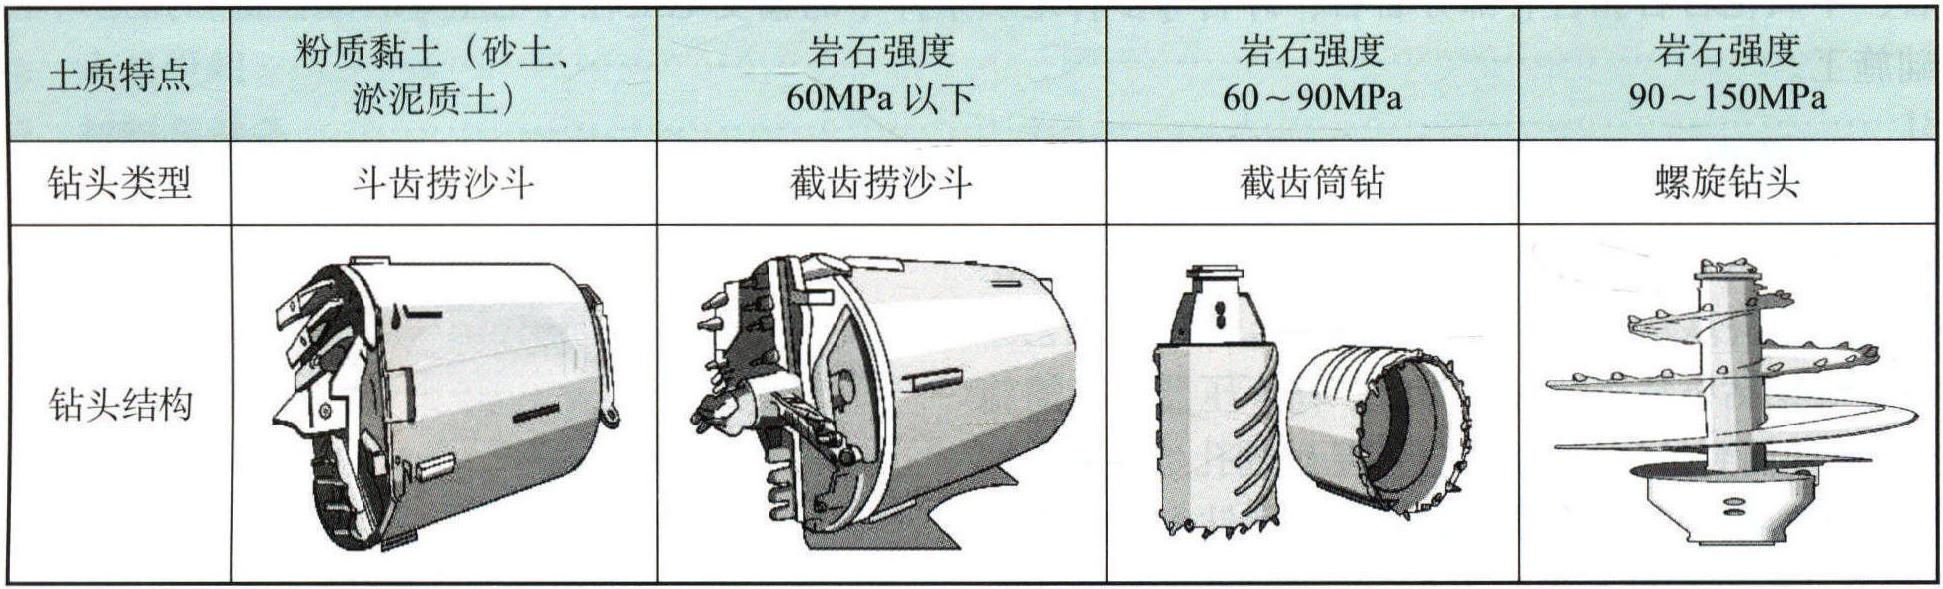 旋挖钻机桩基孔机械化施工典型施工方法 GWGF002-2014-SD-XL